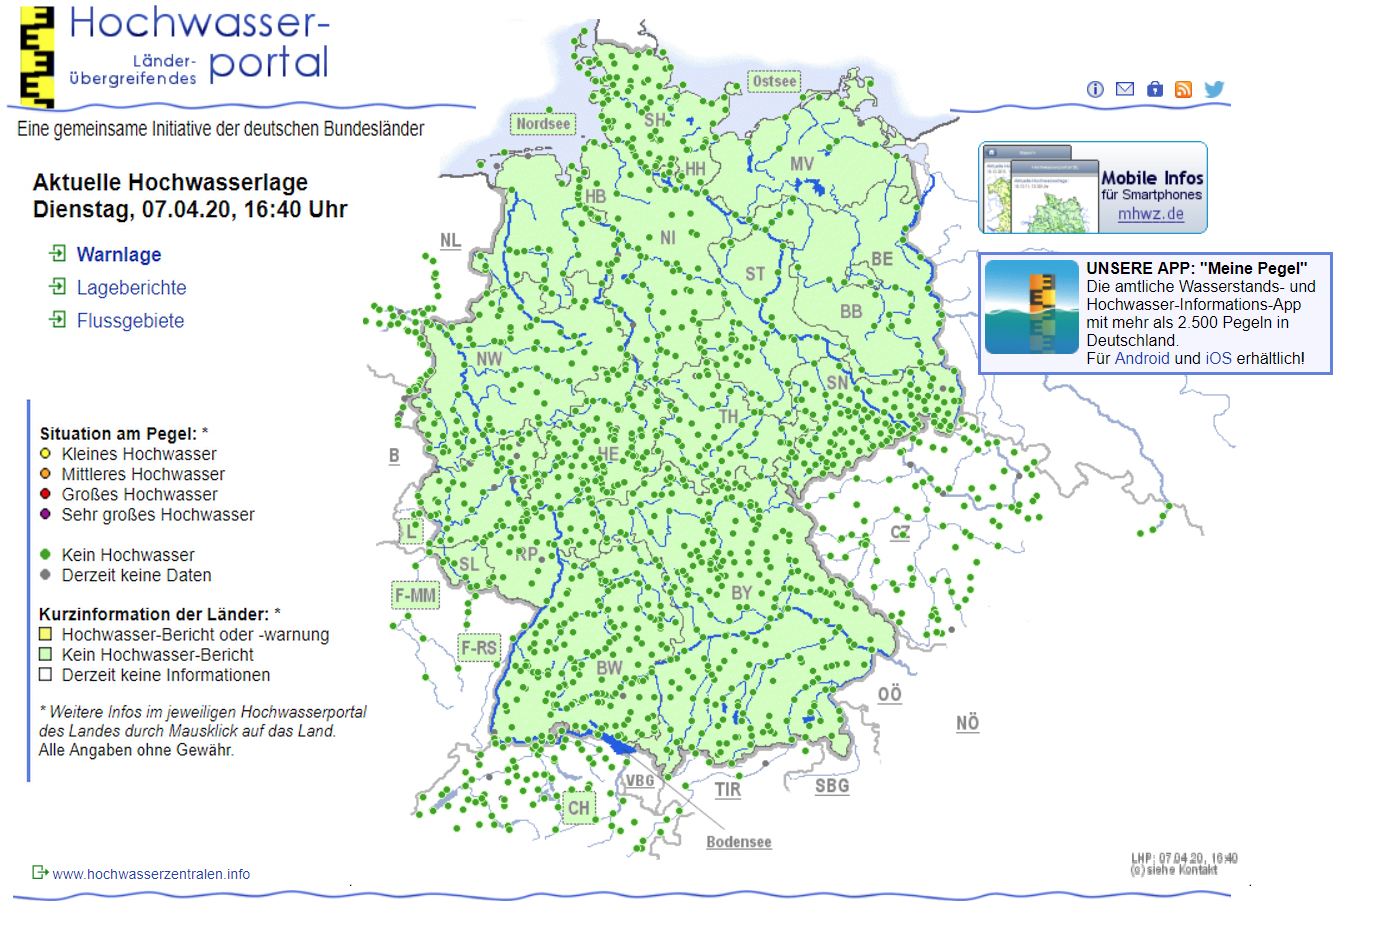 Slika zaslona mrežne stranice hochwasserzentralen.de na kojoj se može provjeriti stanje vodostaja u Njemačkoj.